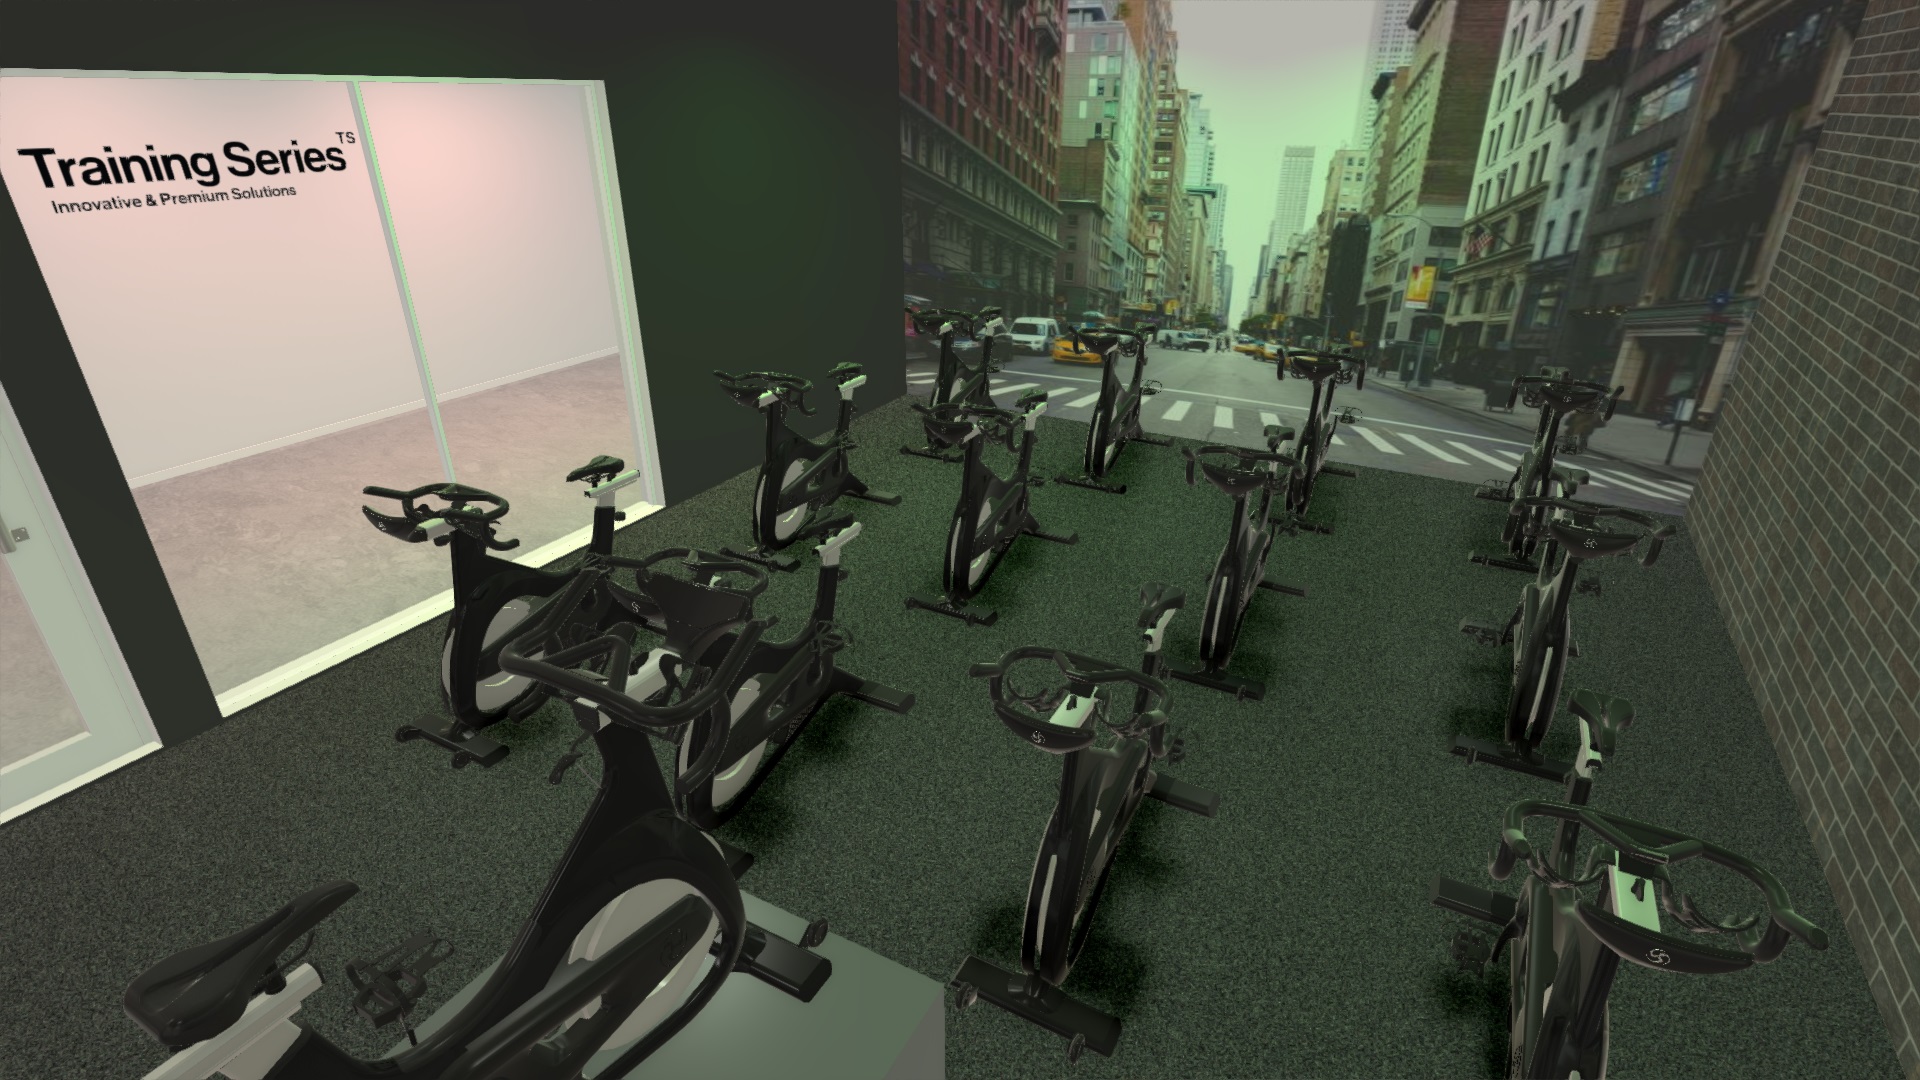 Training Series club fitness aménagement intérieur studio cycling maquette modélisation 3D